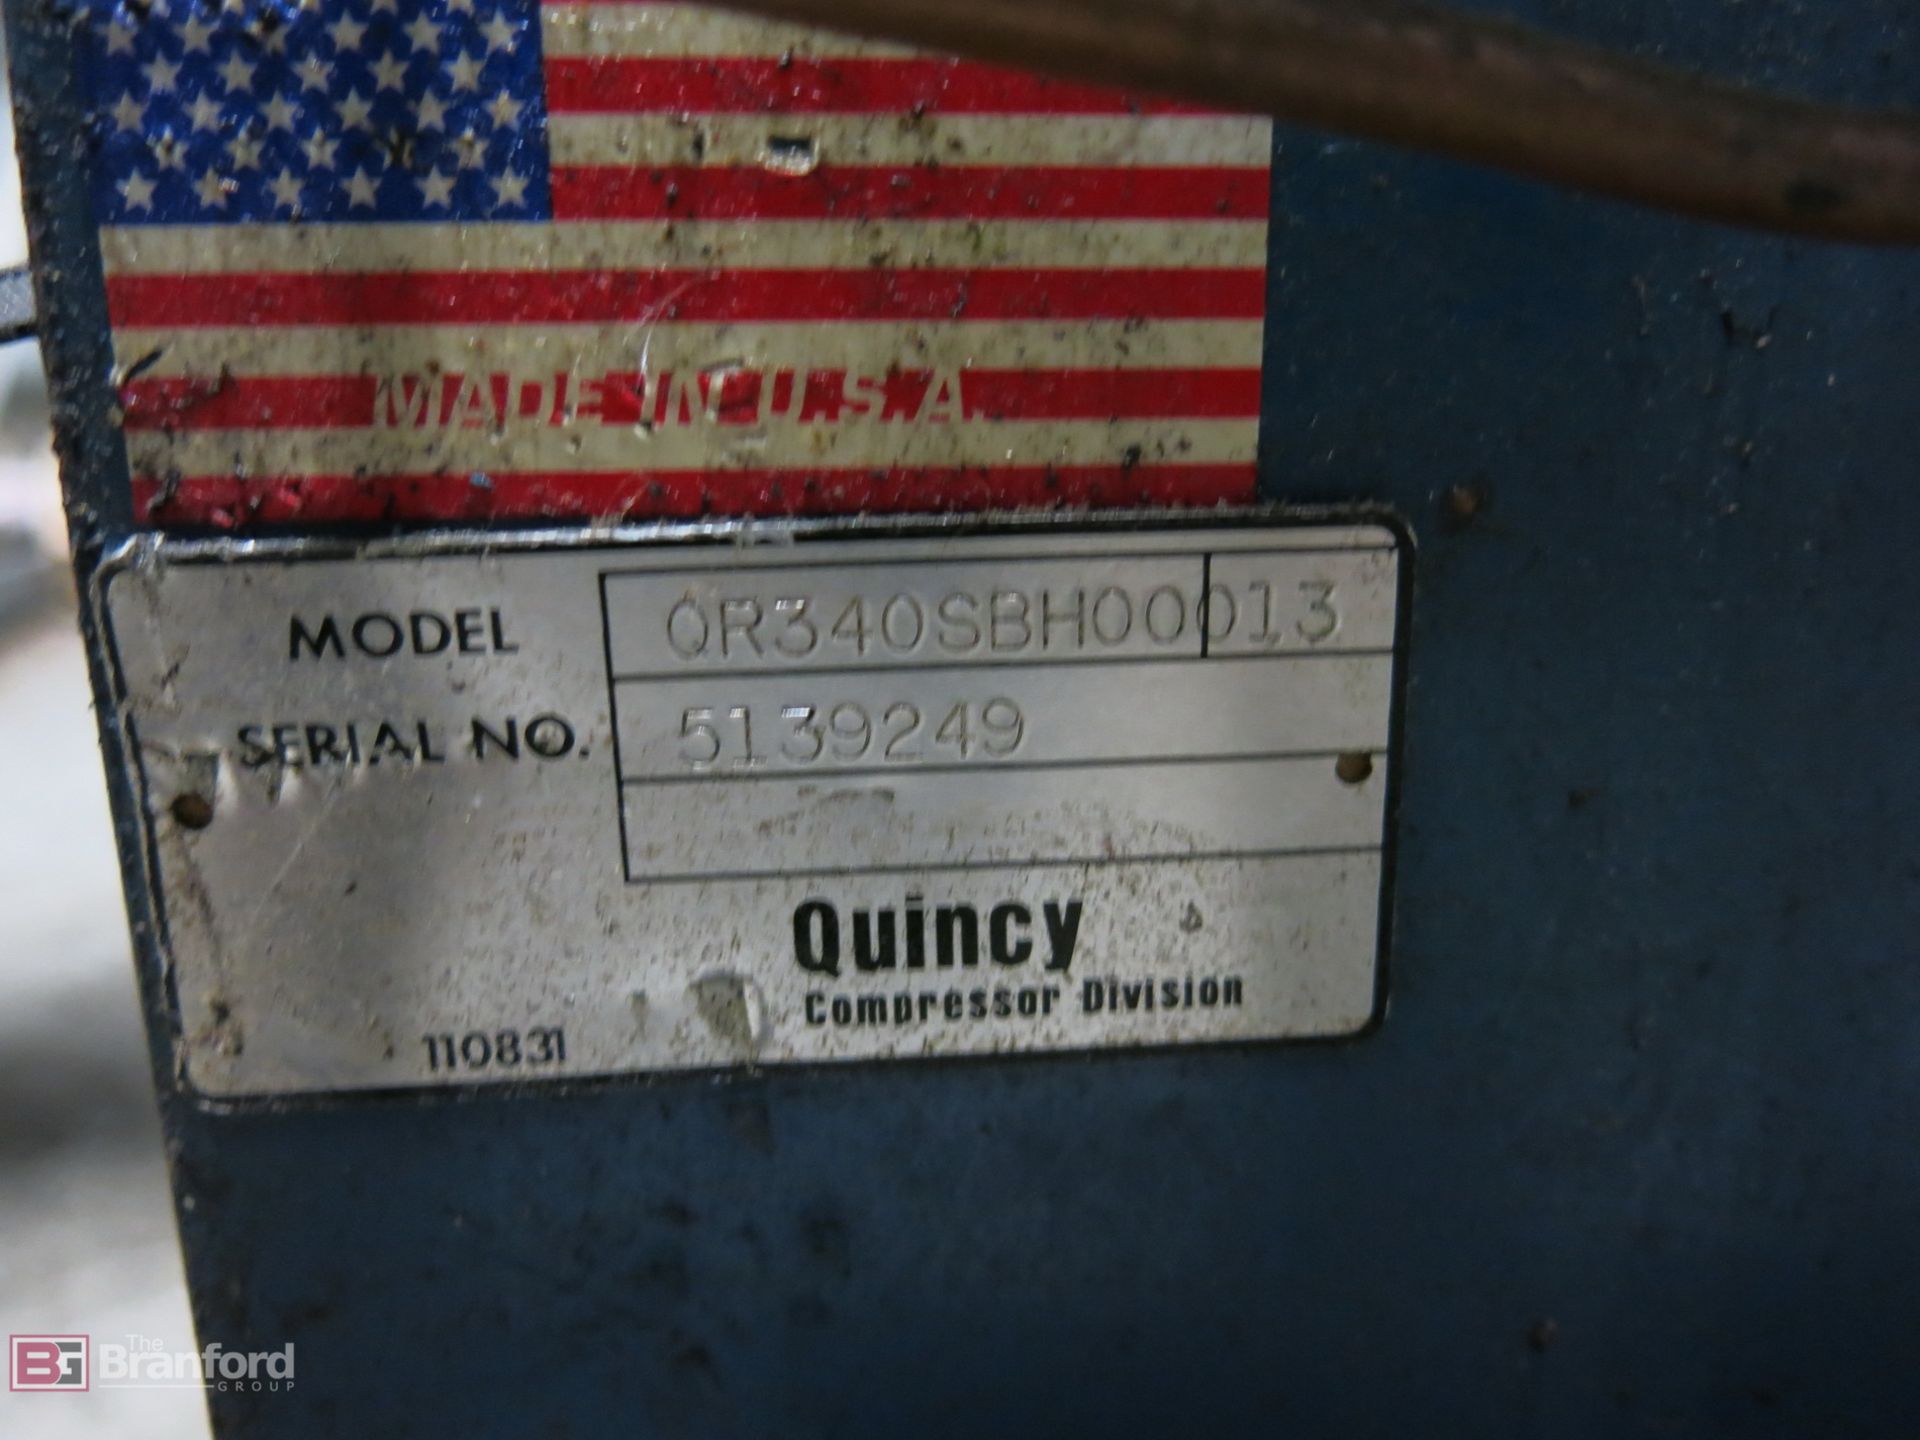 Quincy Model QR340SBH00013 15-HP Air Compressor - Image 2 of 3